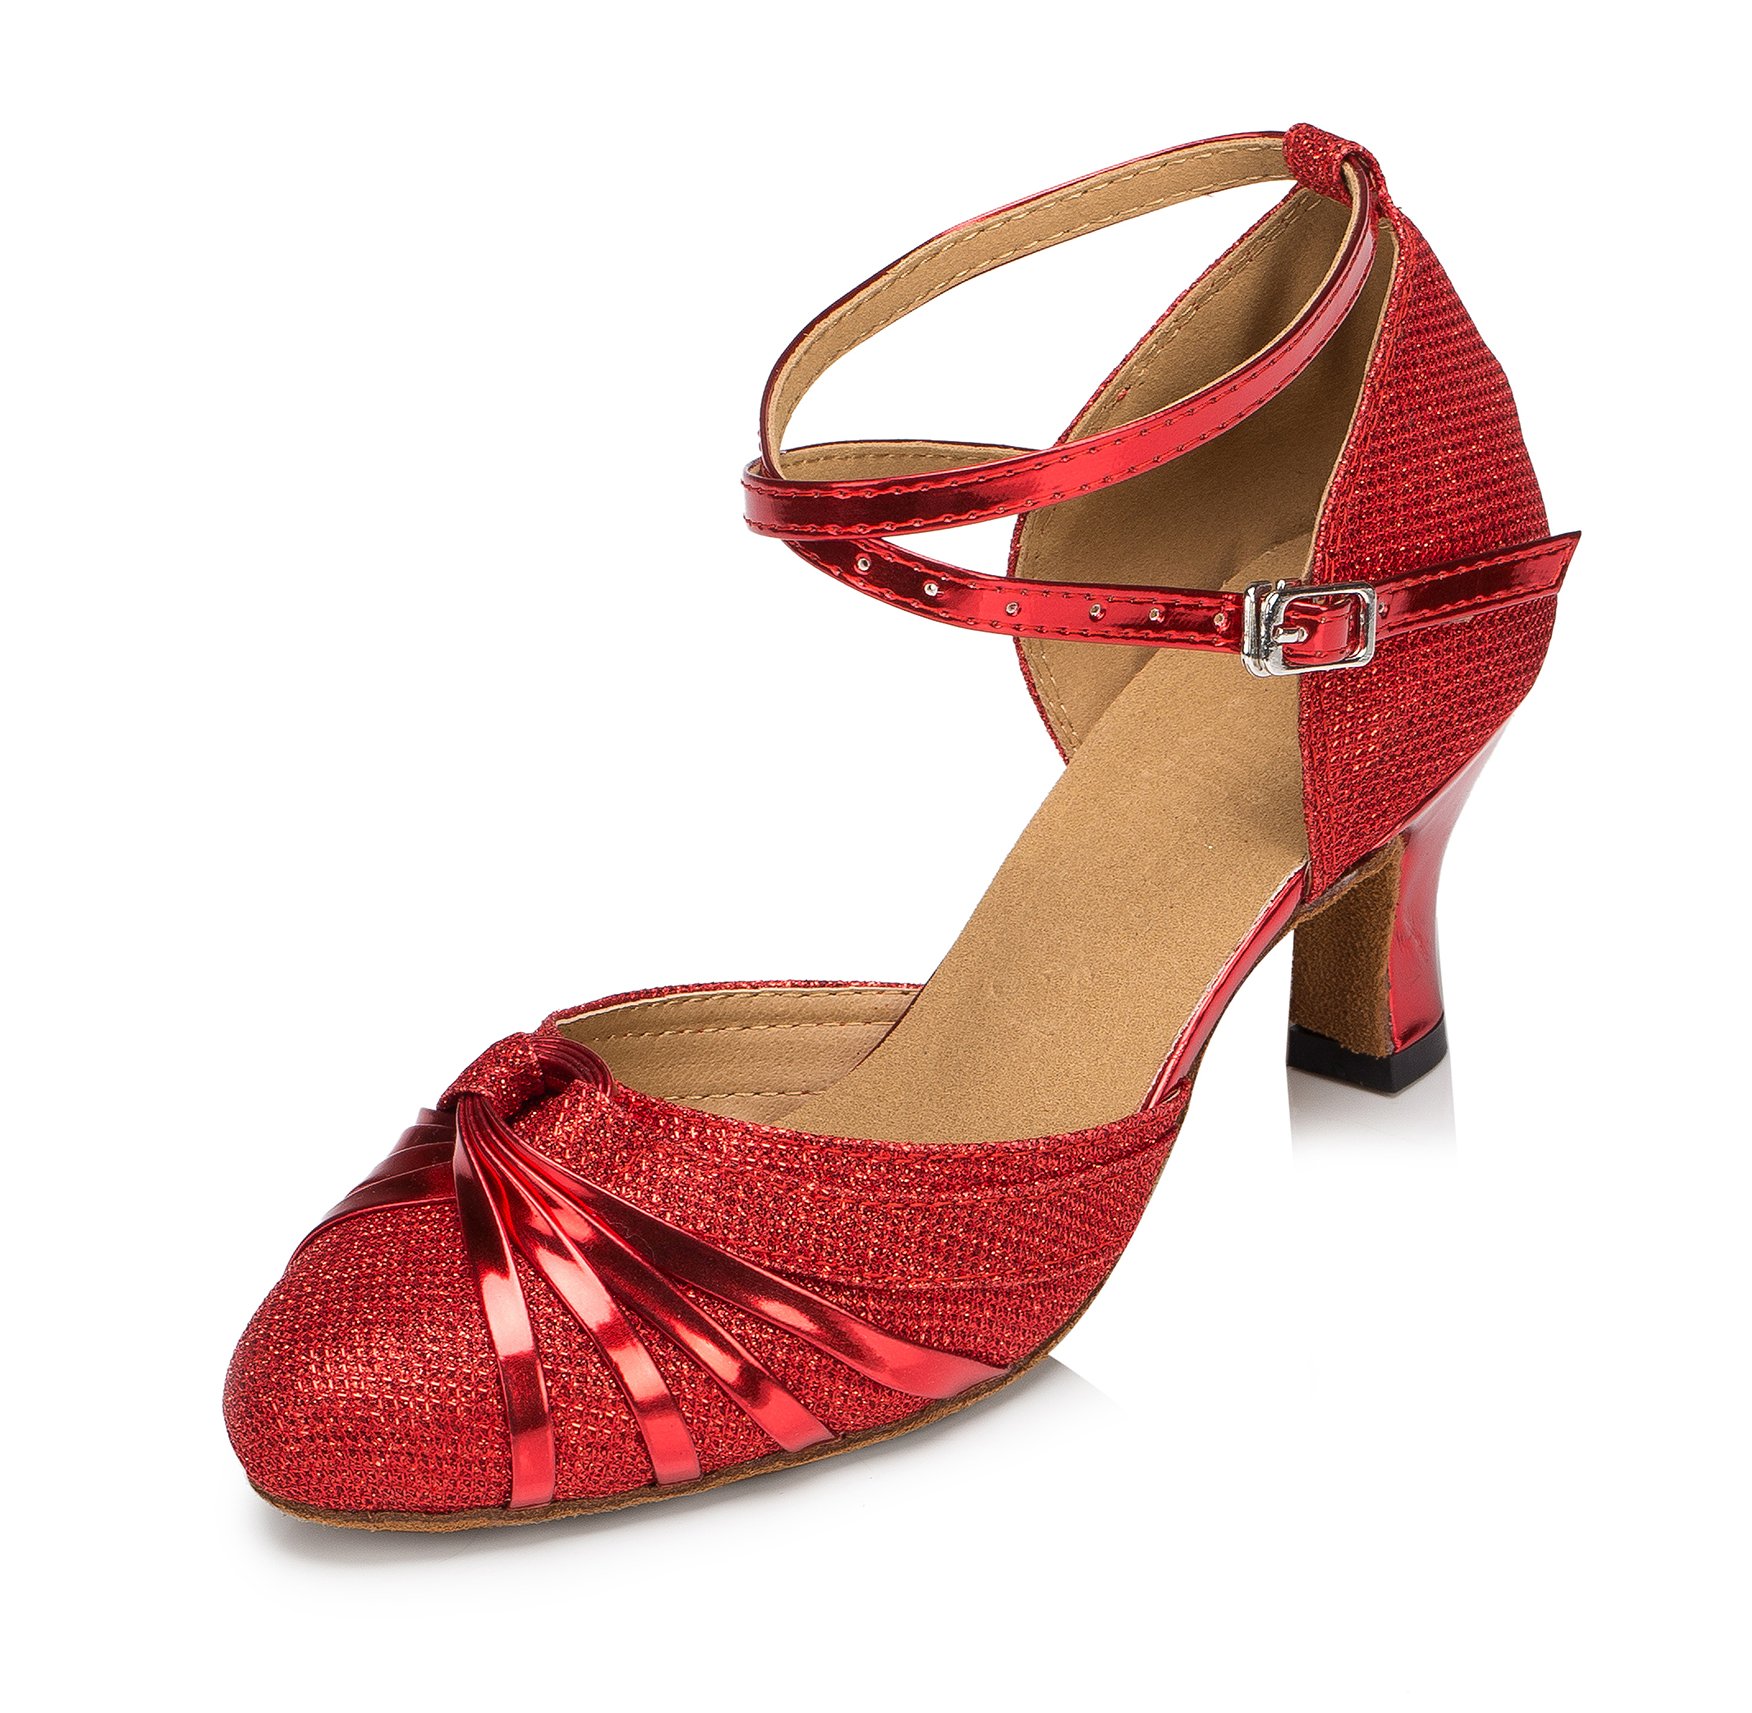 URVIP Neuheiten Frauen's Pailletten Heels Absatzschuhe Moderne Latein-Schuhe mit Knöchelriemen Tanzschuhe LD072 Rot 34 2/3 EU